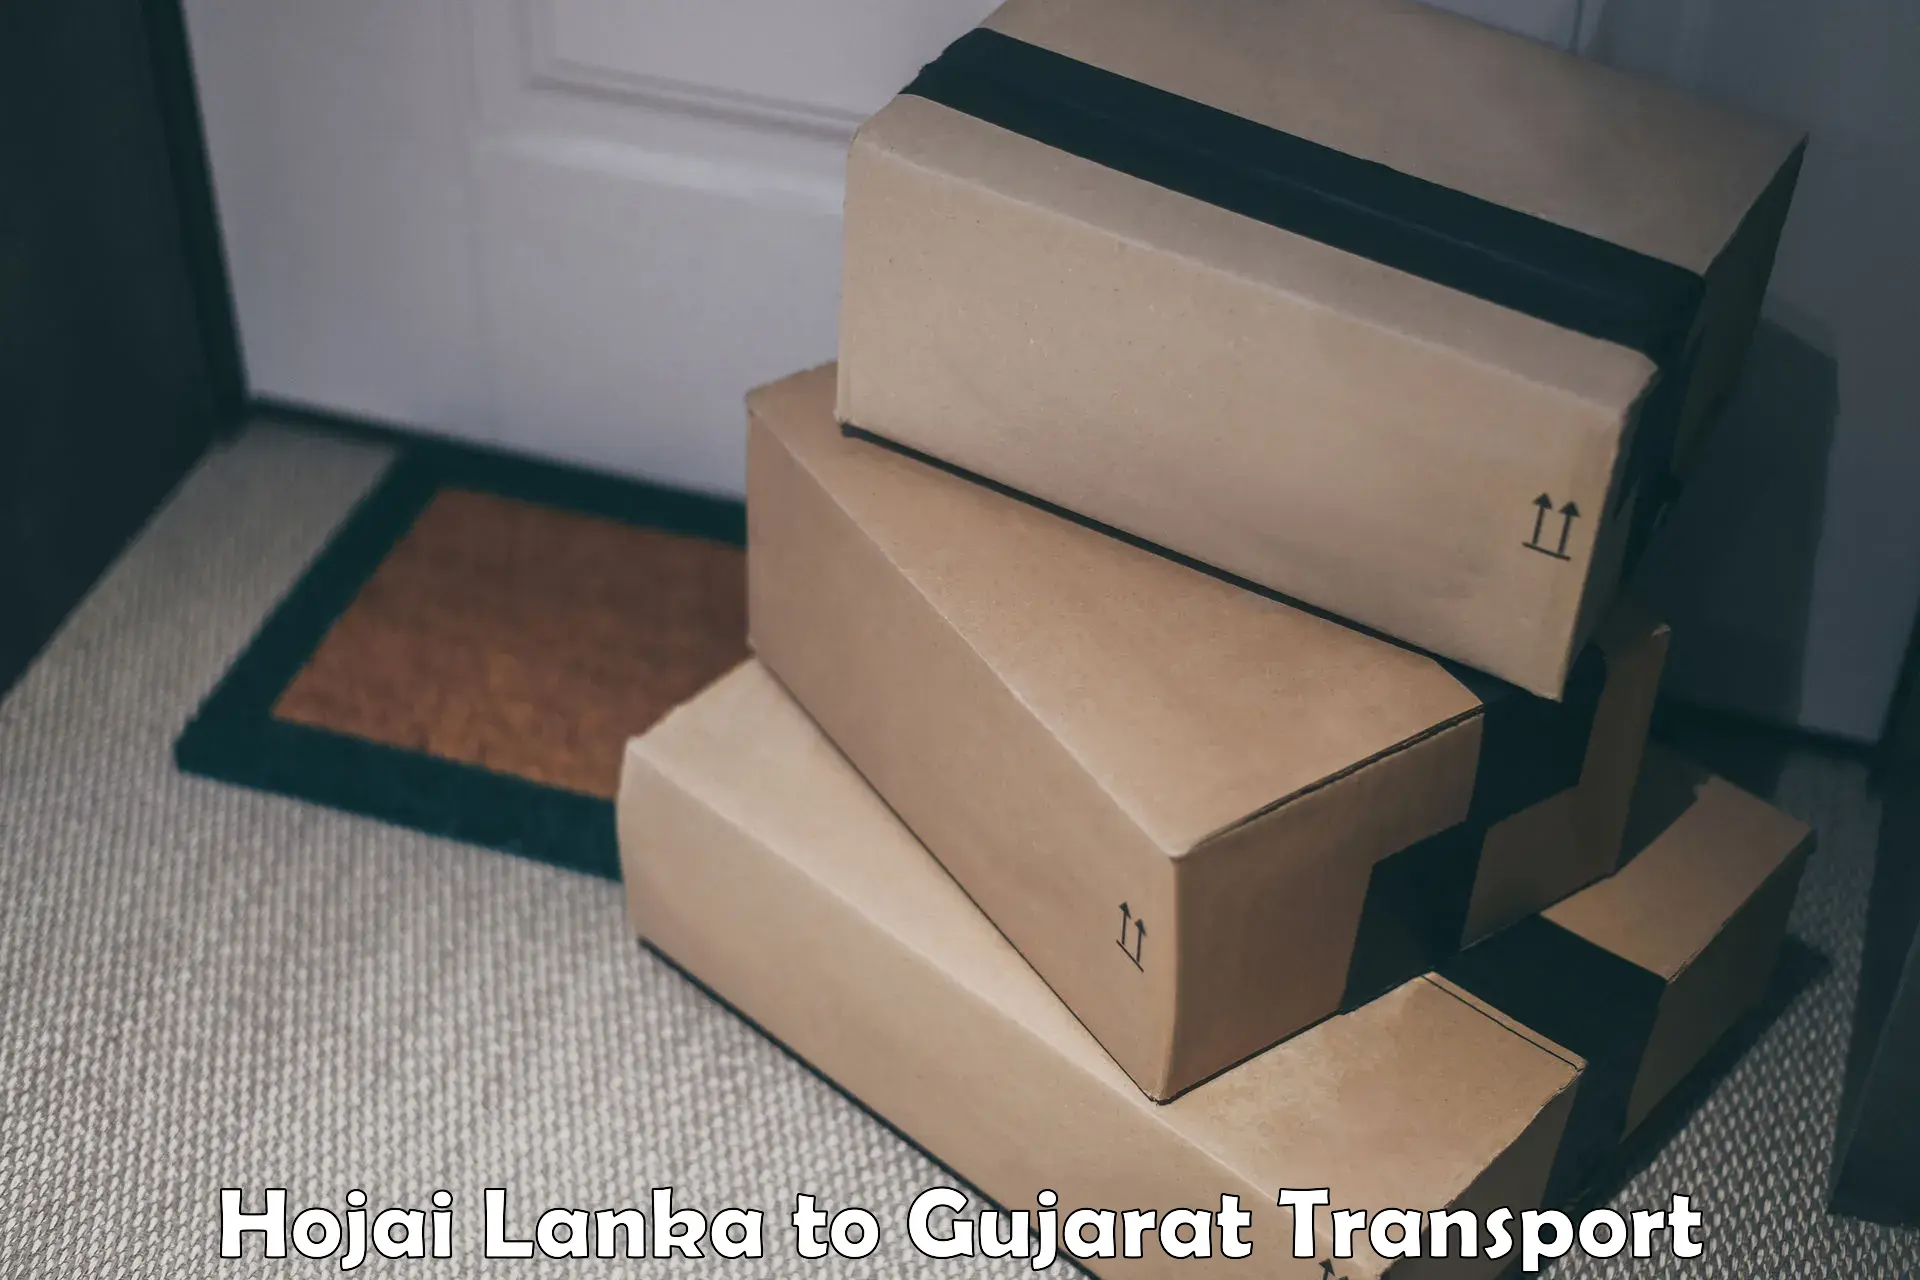 Transport in sharing Hojai Lanka to Patan Gujarat